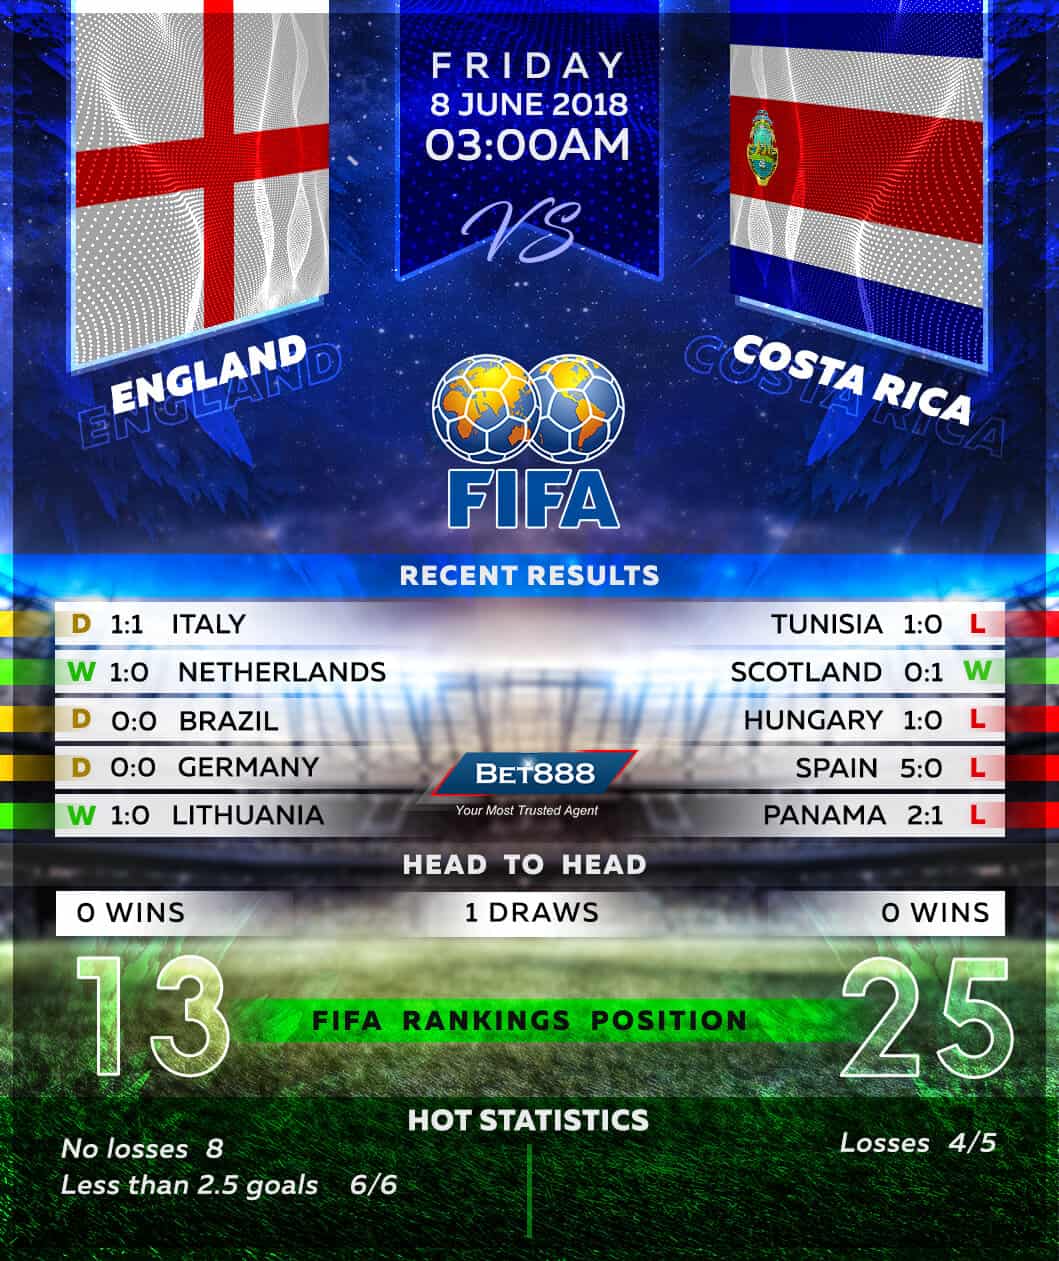 England vs Costa Rica 08/06/18